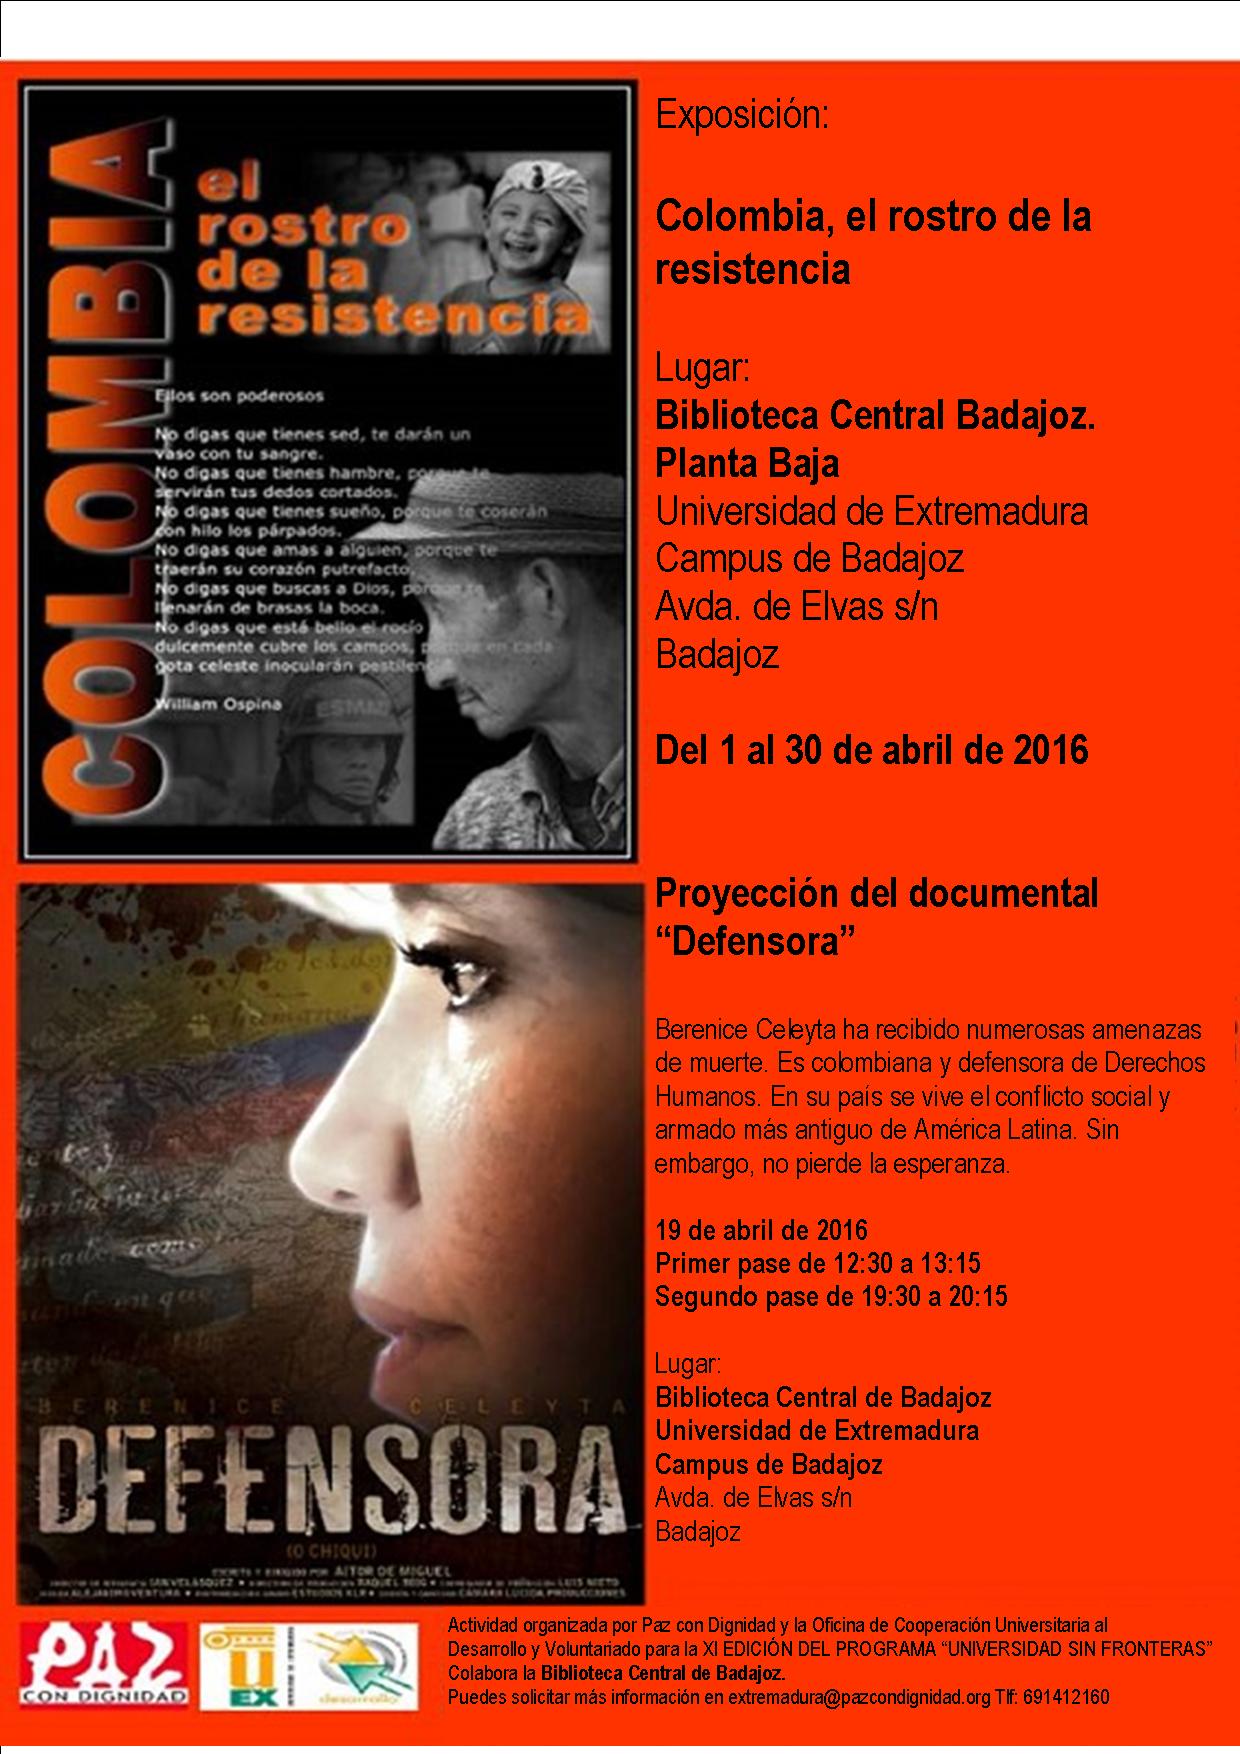 Exposición fotográfica "Colombia, el rostro de la resistencia" y Proyección del documental "Defensora".